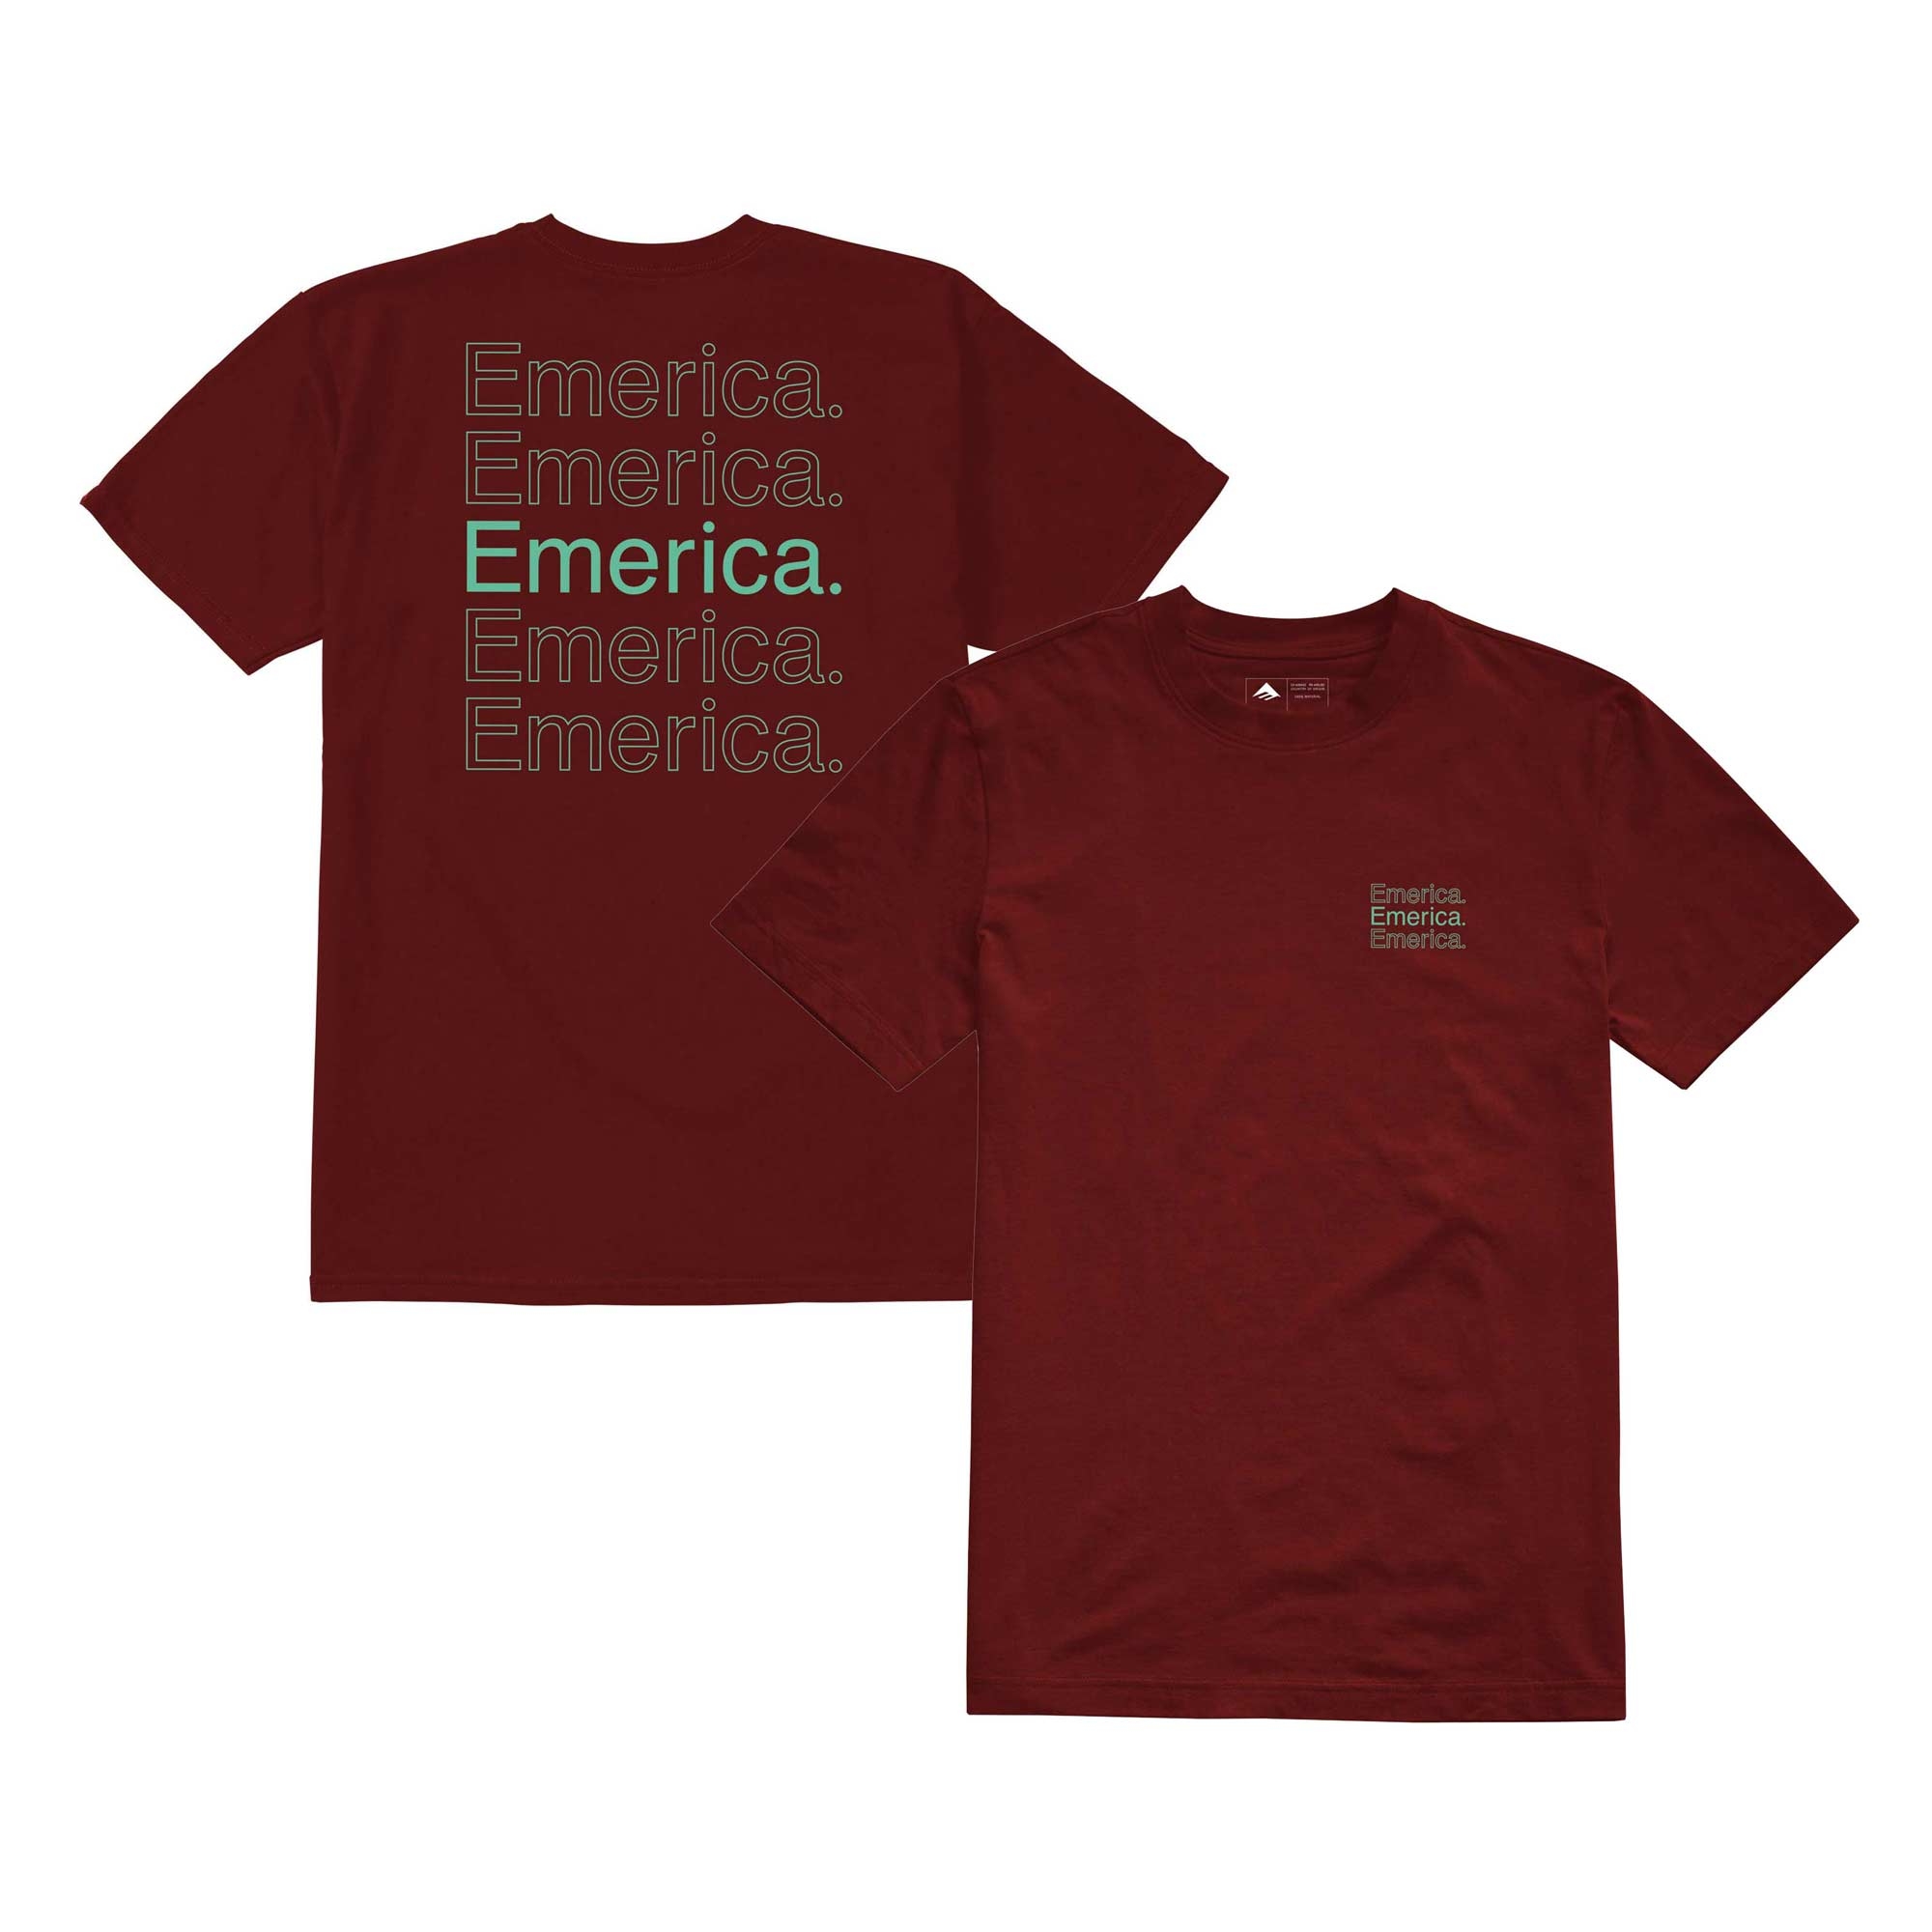 EMERICA T-Shirt NEW STACK S/S burgundy